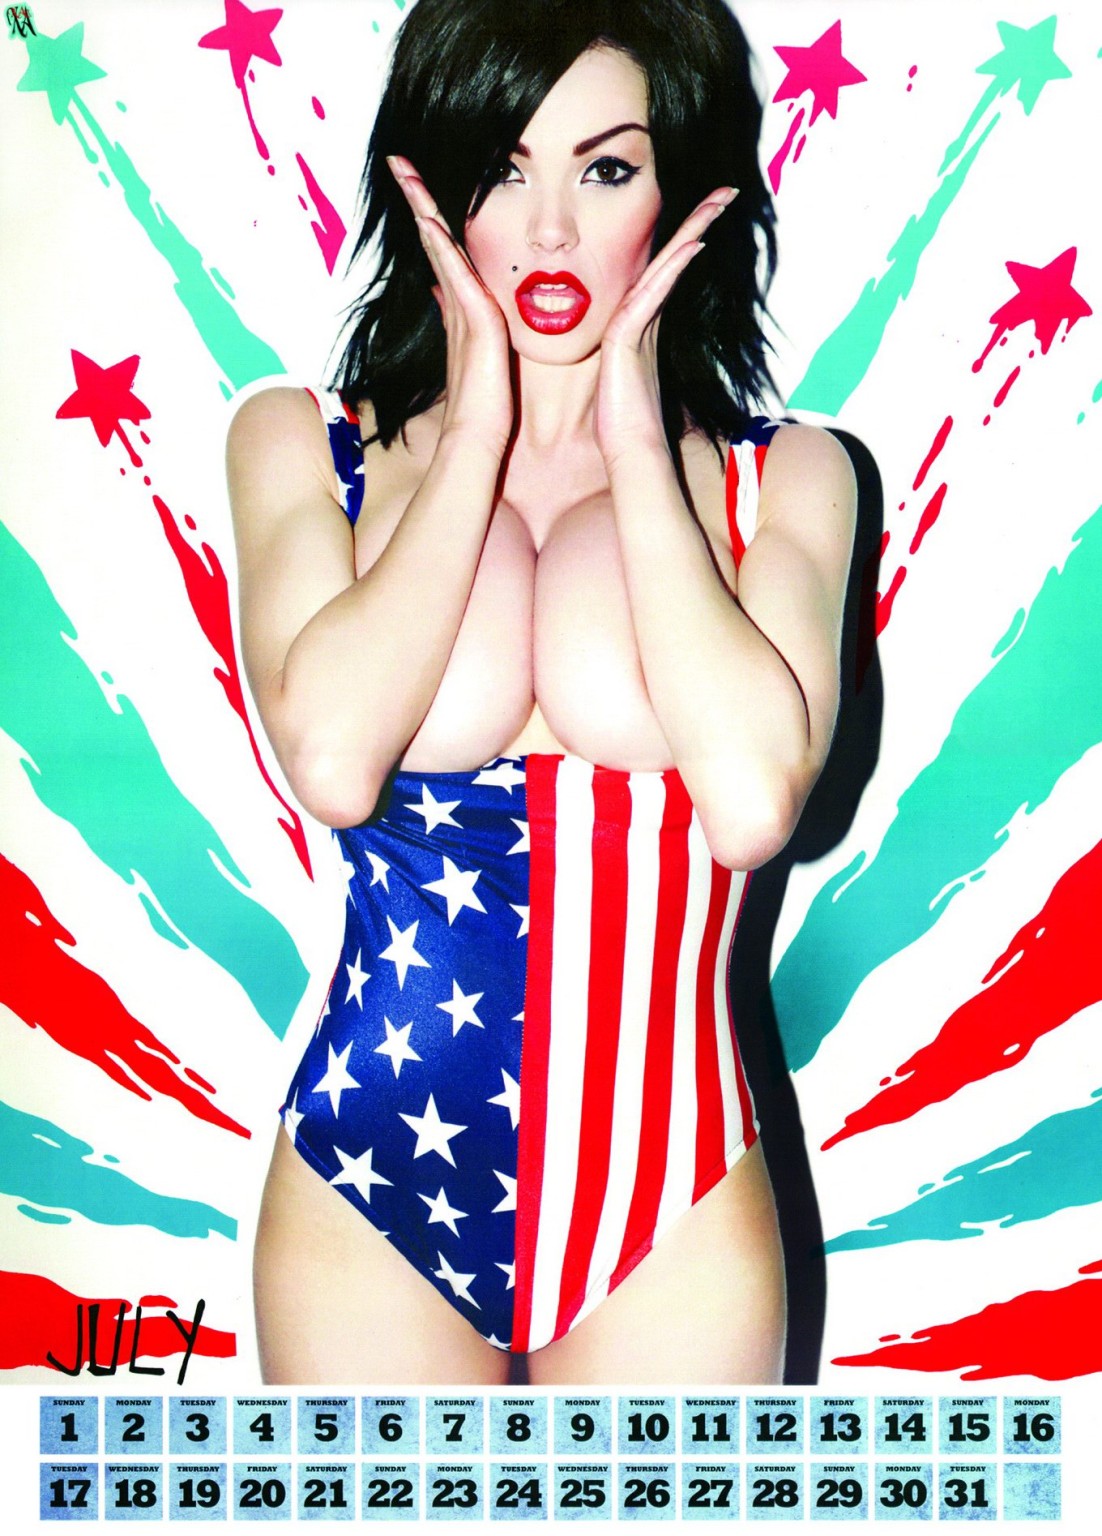 Busty vikki soffia topless in malvagio fronte rivista 2012 calendario
 #75275347